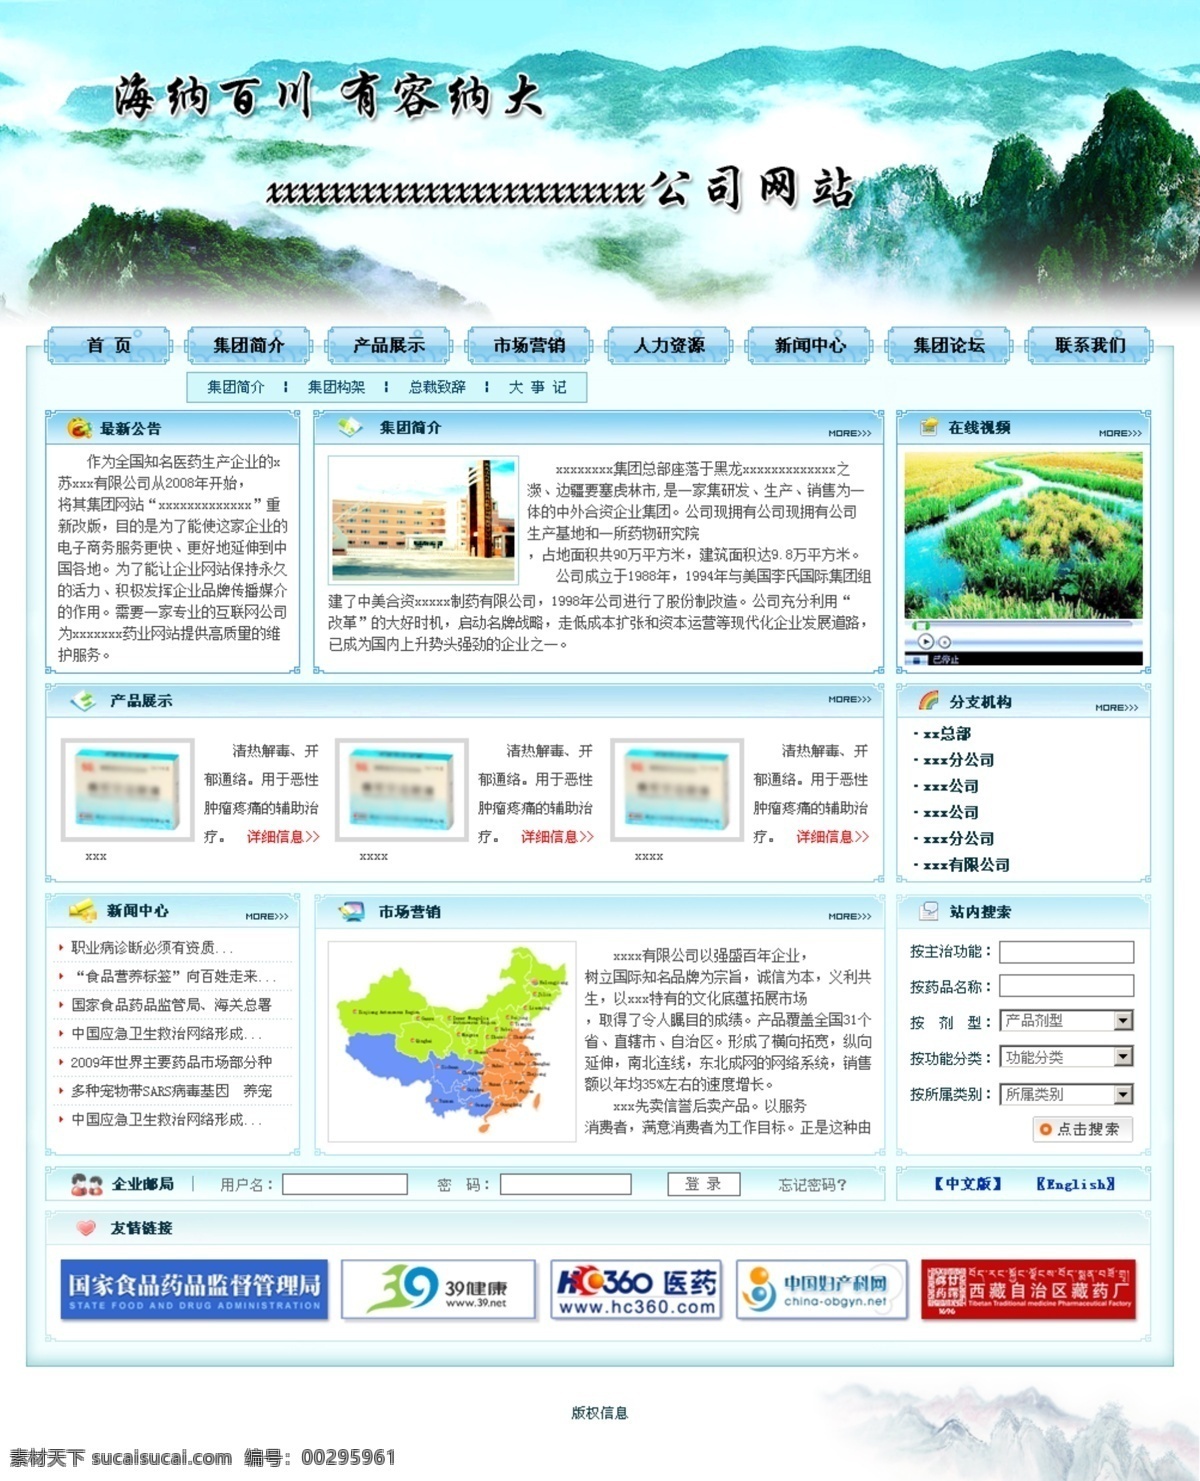 旅游 企业 山川 素雅 网页模板 医药 源文件 中文模板 背景 网站 模板下载